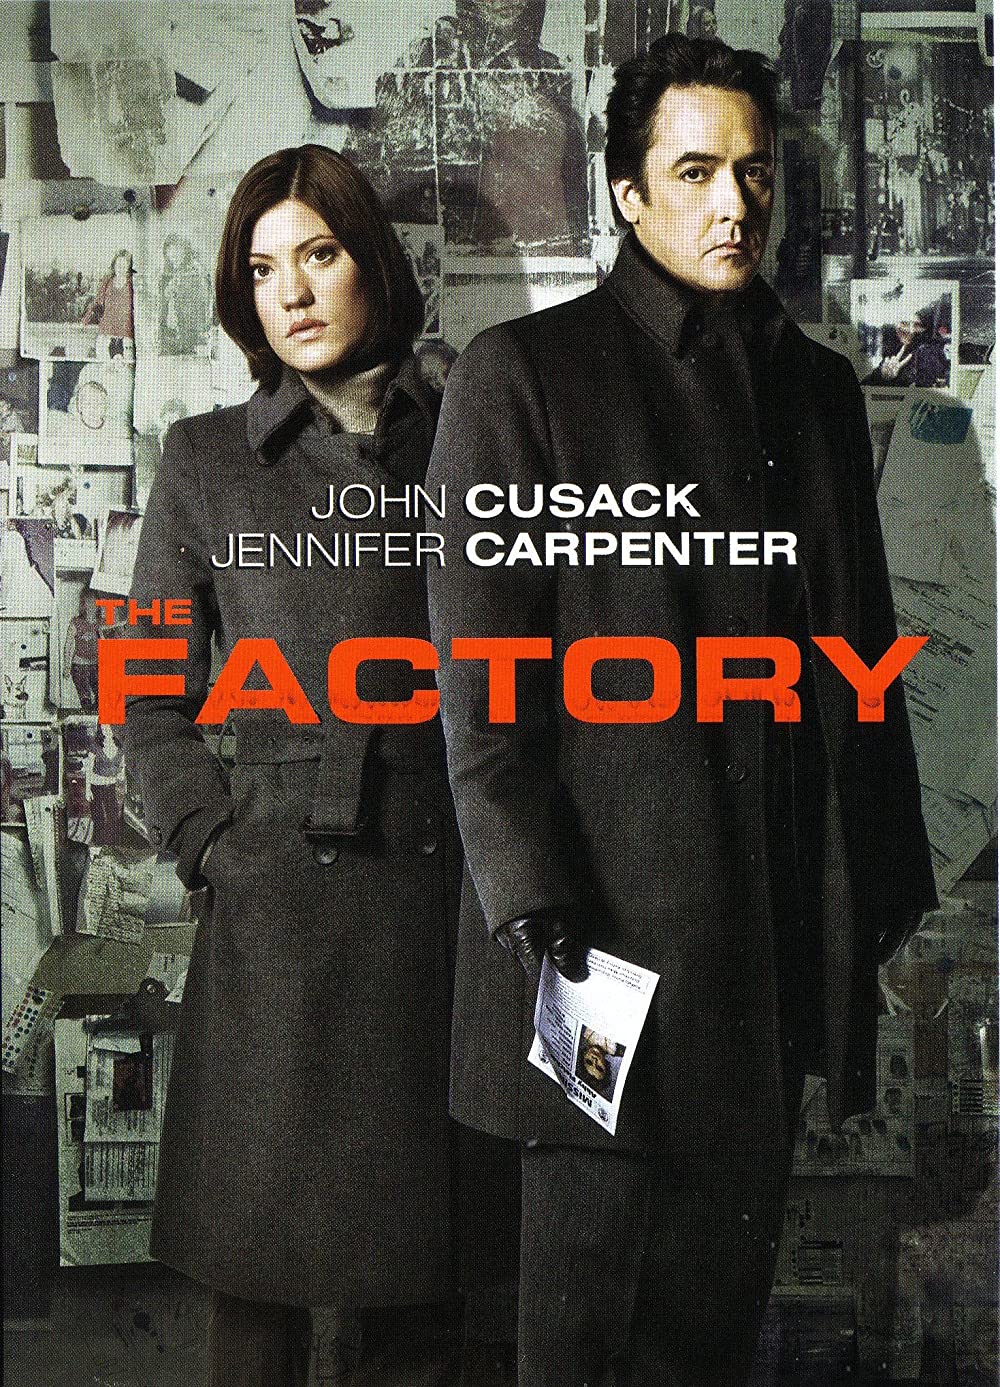 Filmbeschreibung zu The Factory